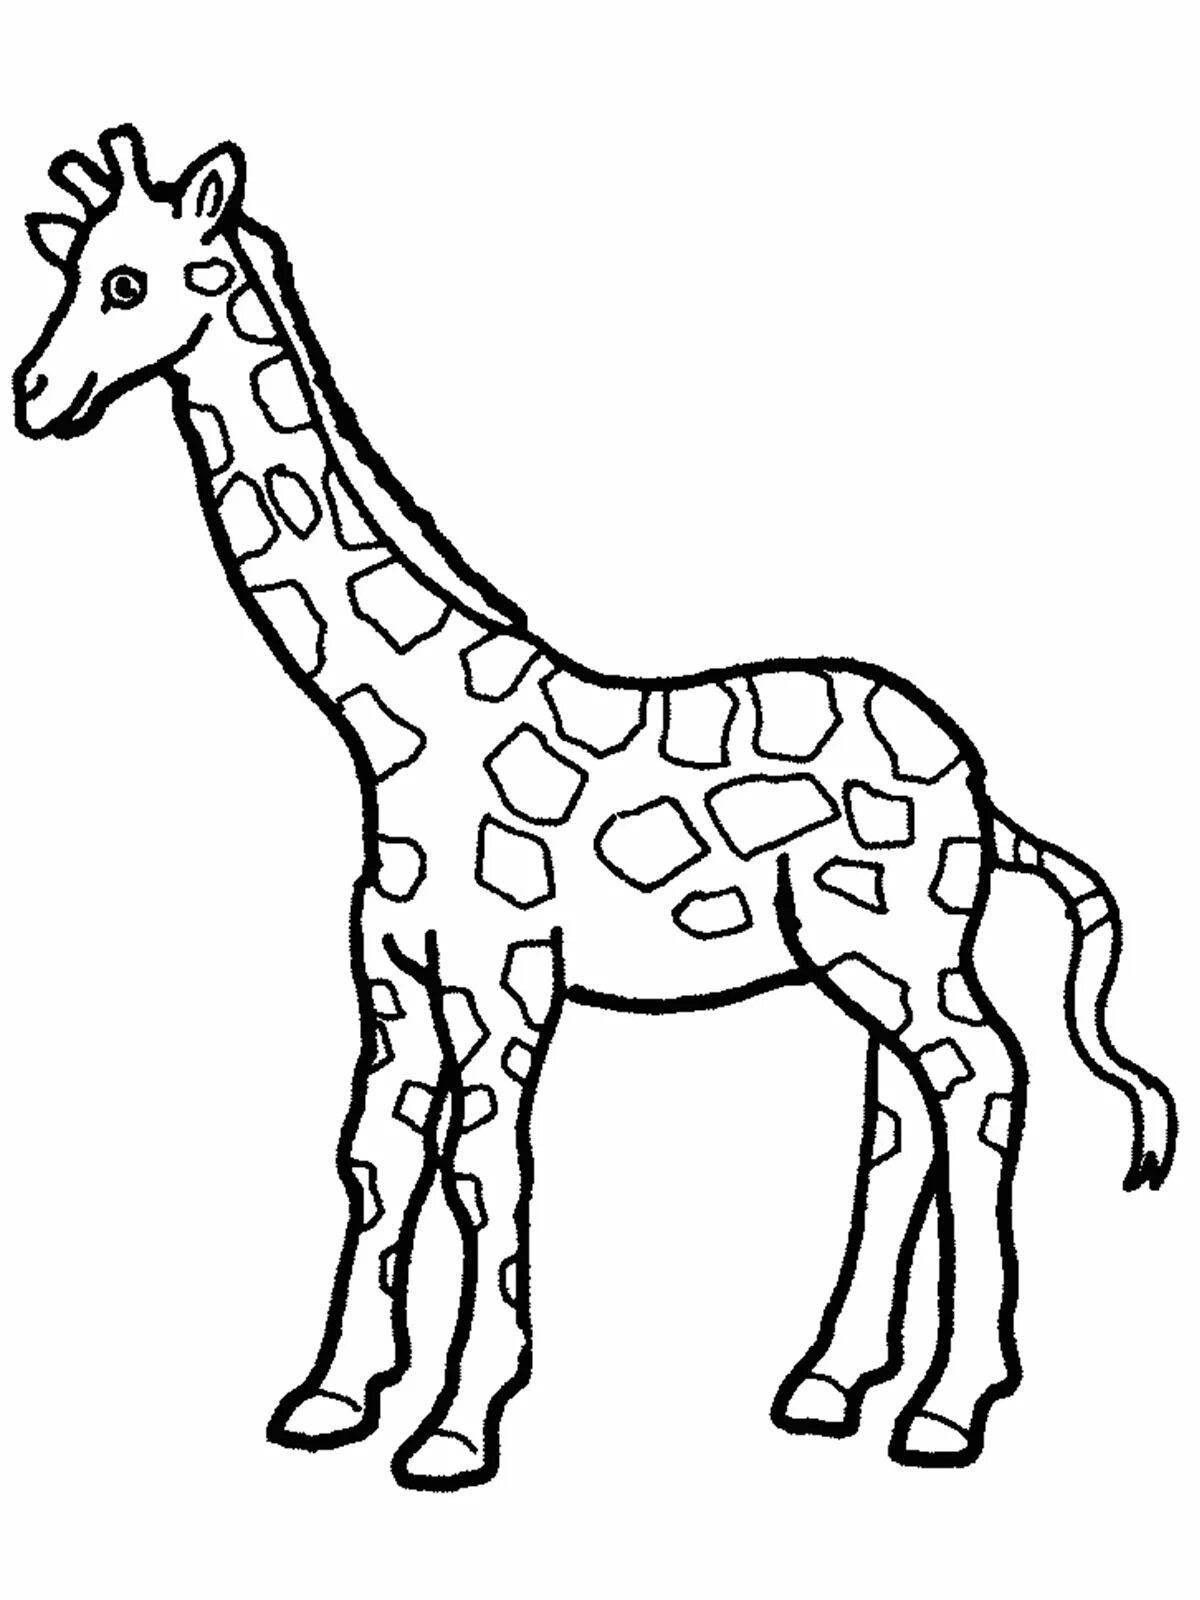 Coloring book shining giraffe